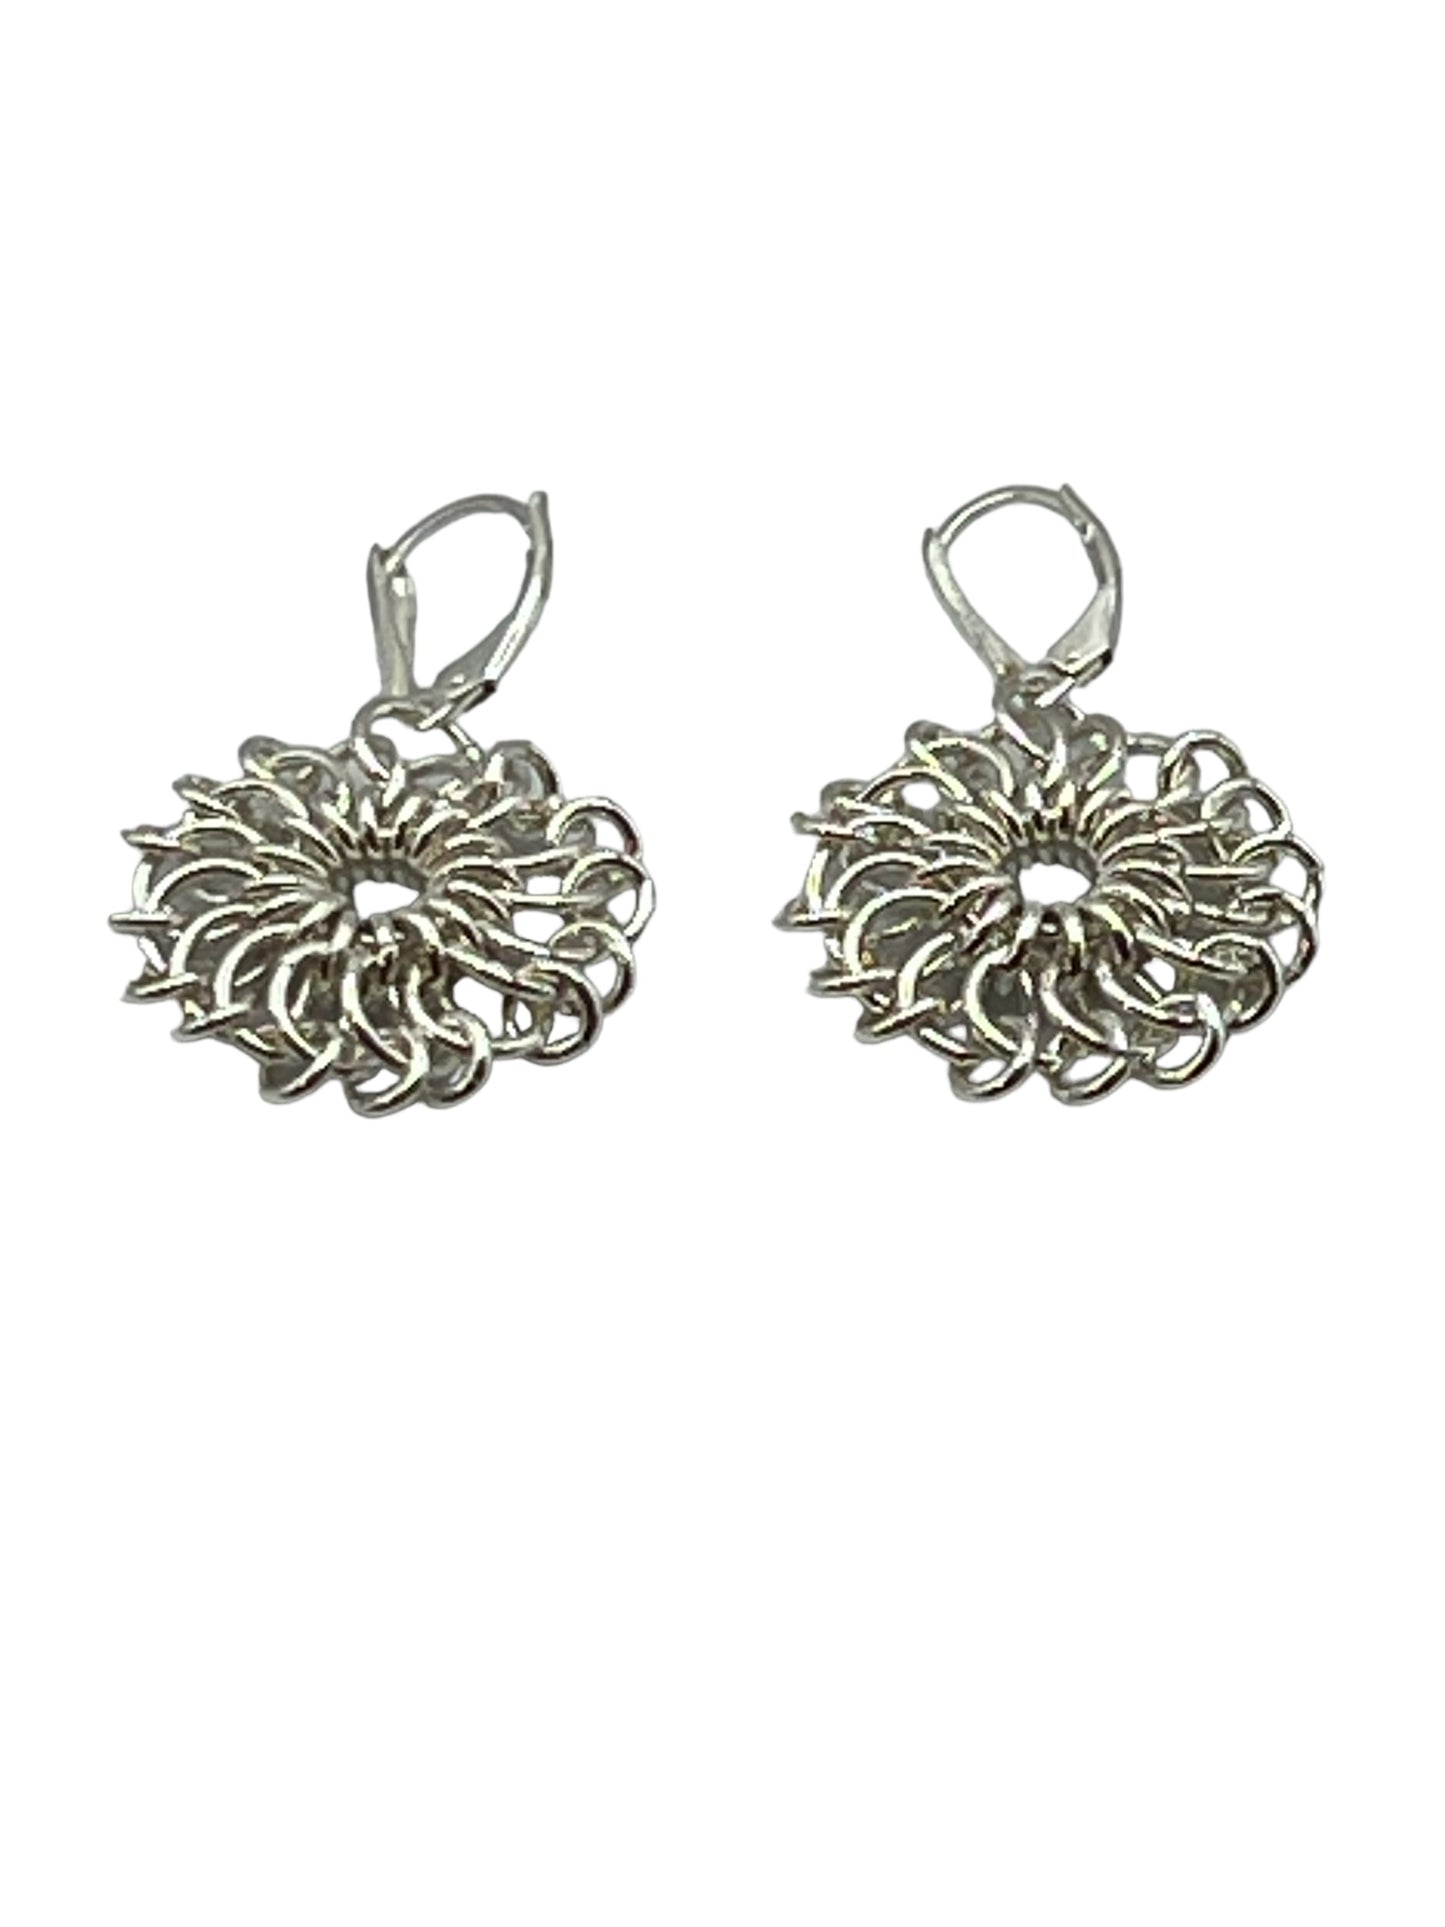 Chrysanthemum Sterling Silver Earrings